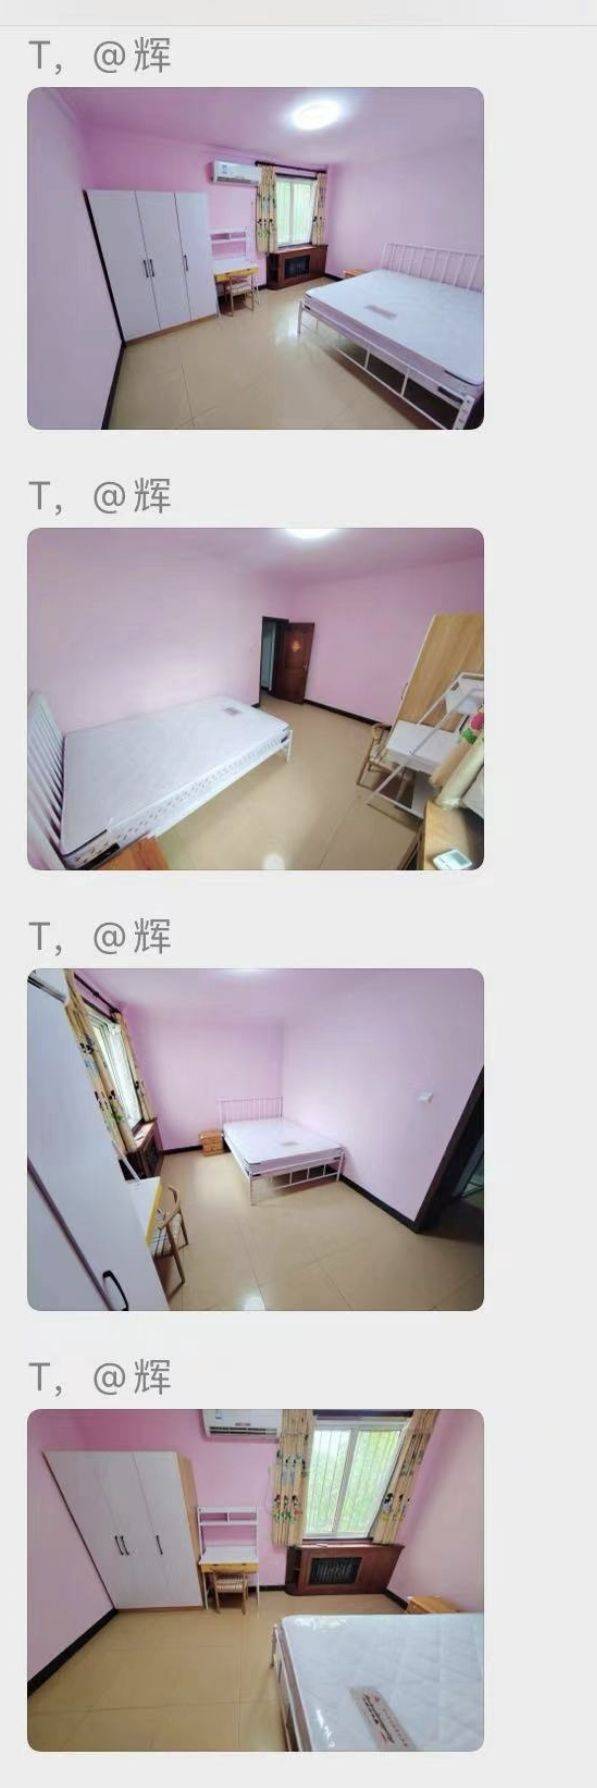 北京-房山-3 rooms,長&短租